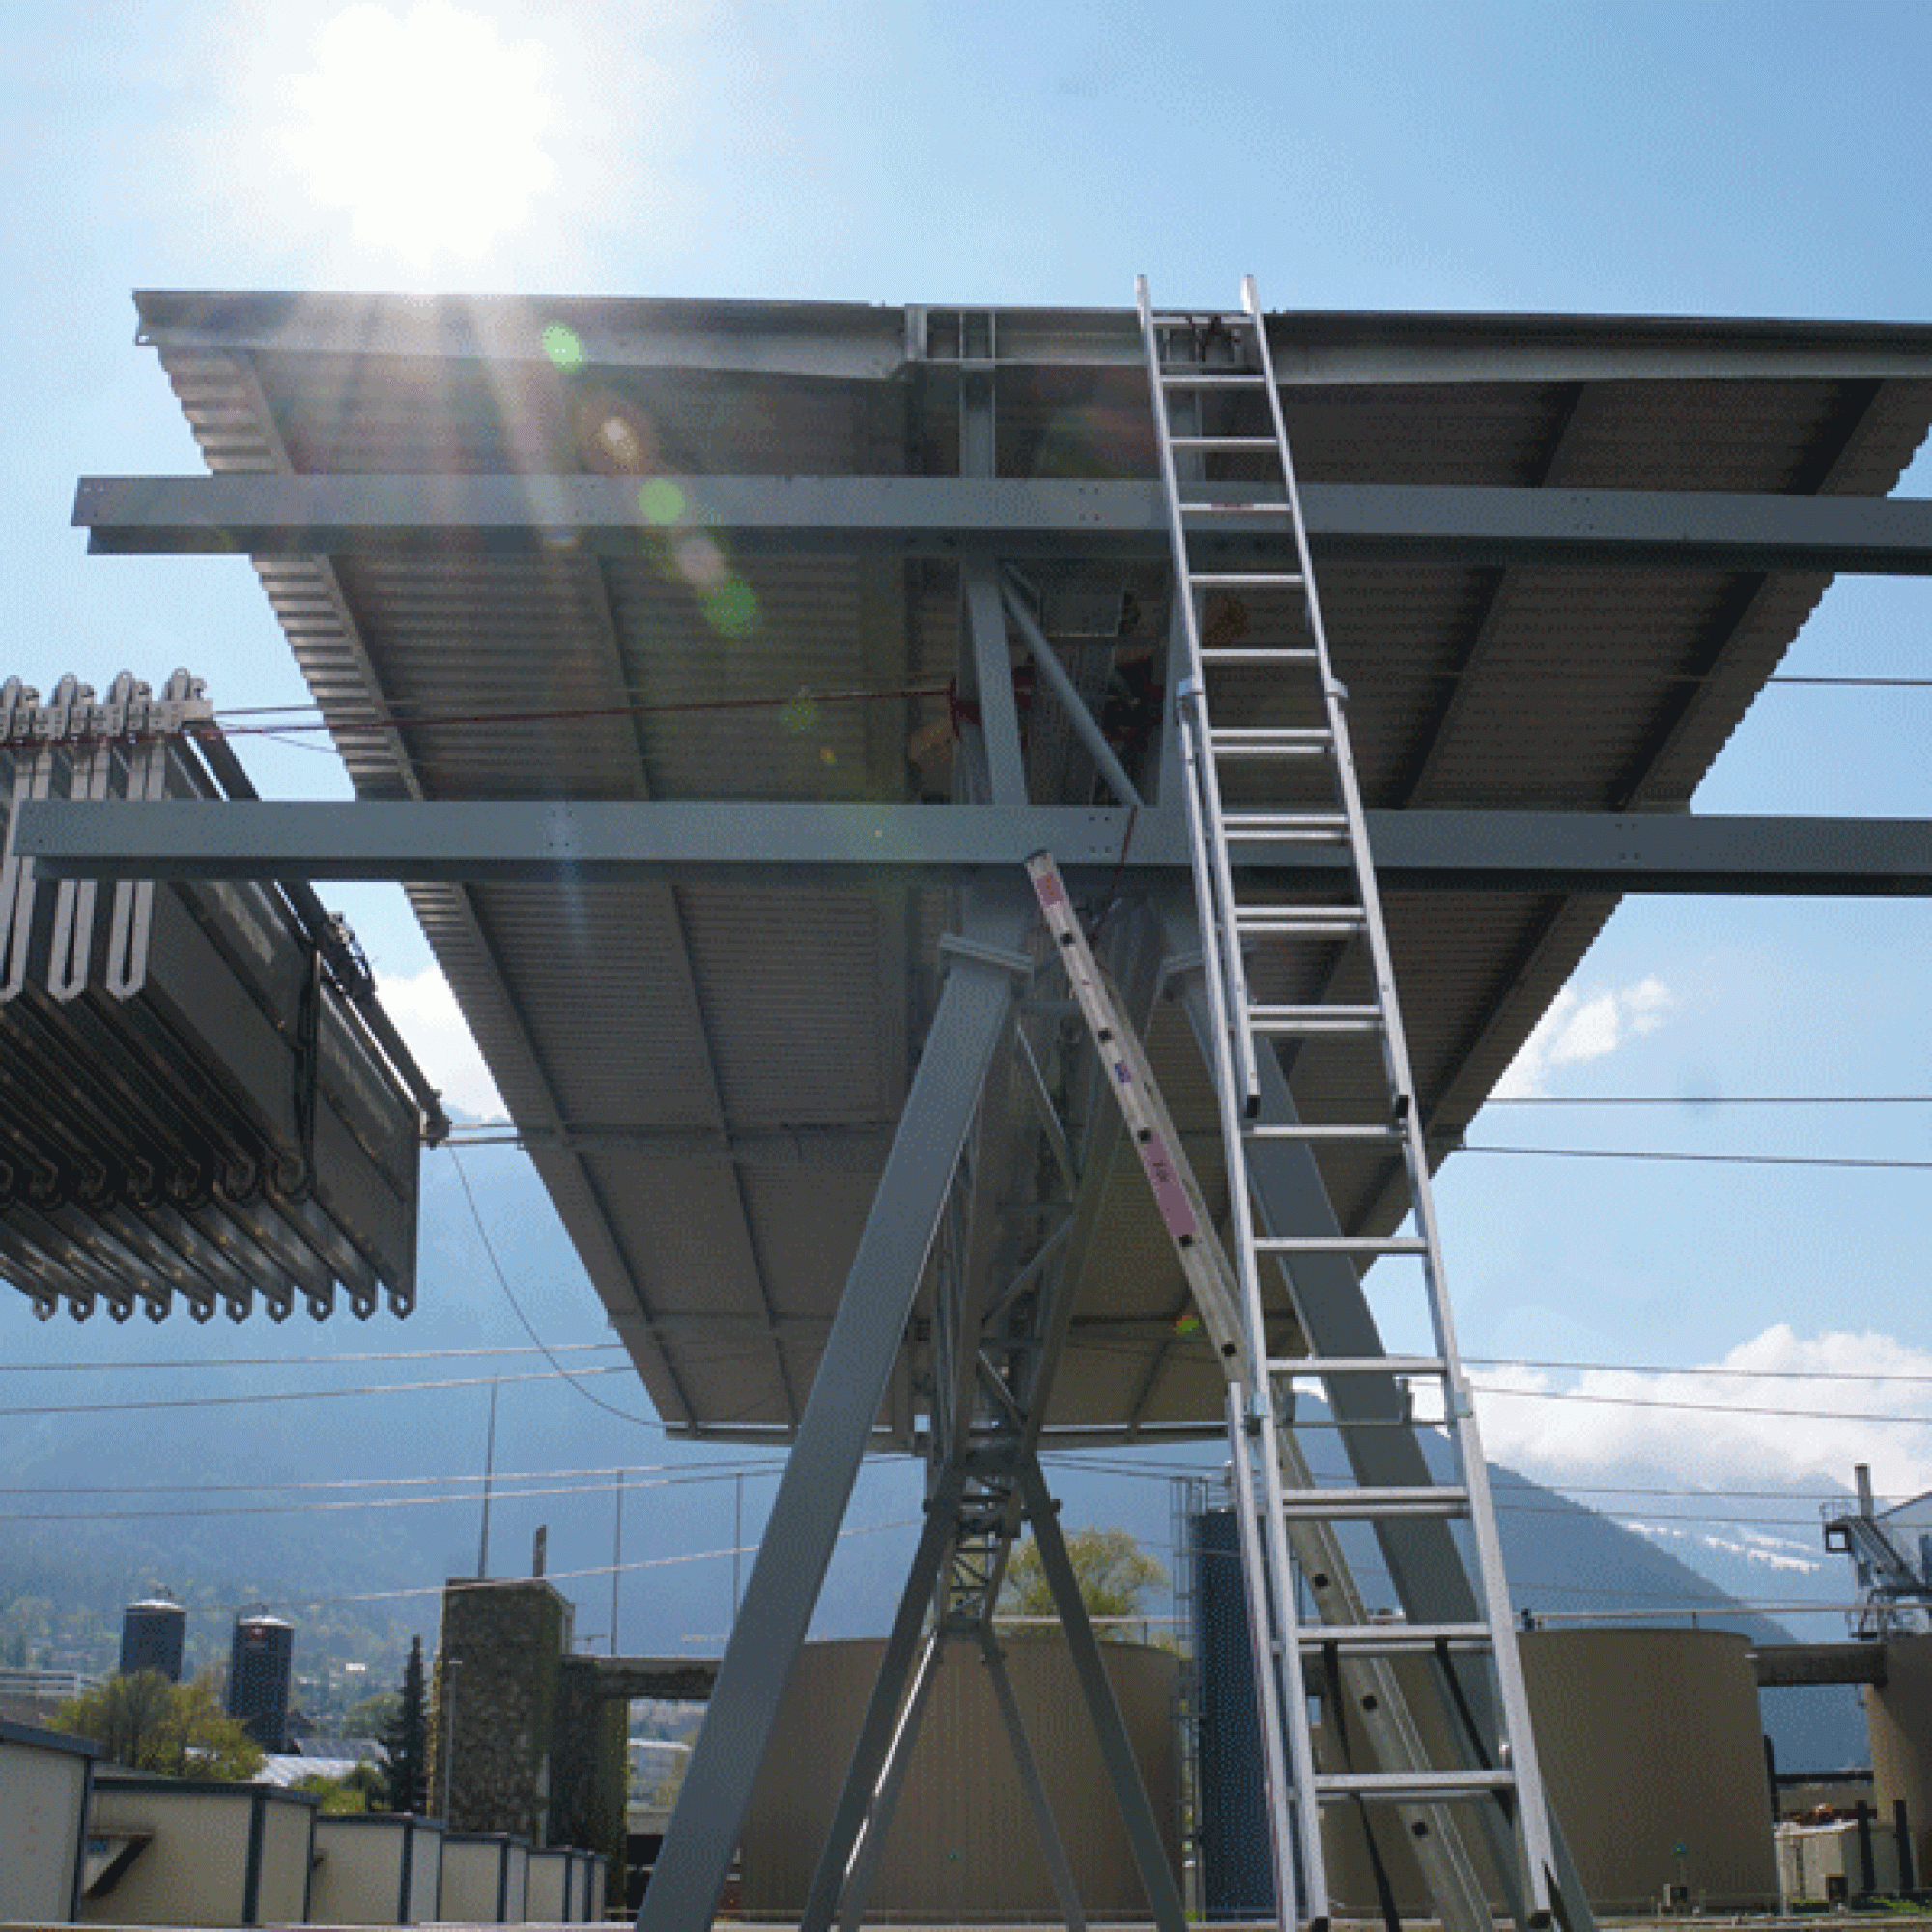 Die glasfreien Photovoltaik-Leichtmodule hängen fünf Meter über dem Klärbecken an Tragseilen.